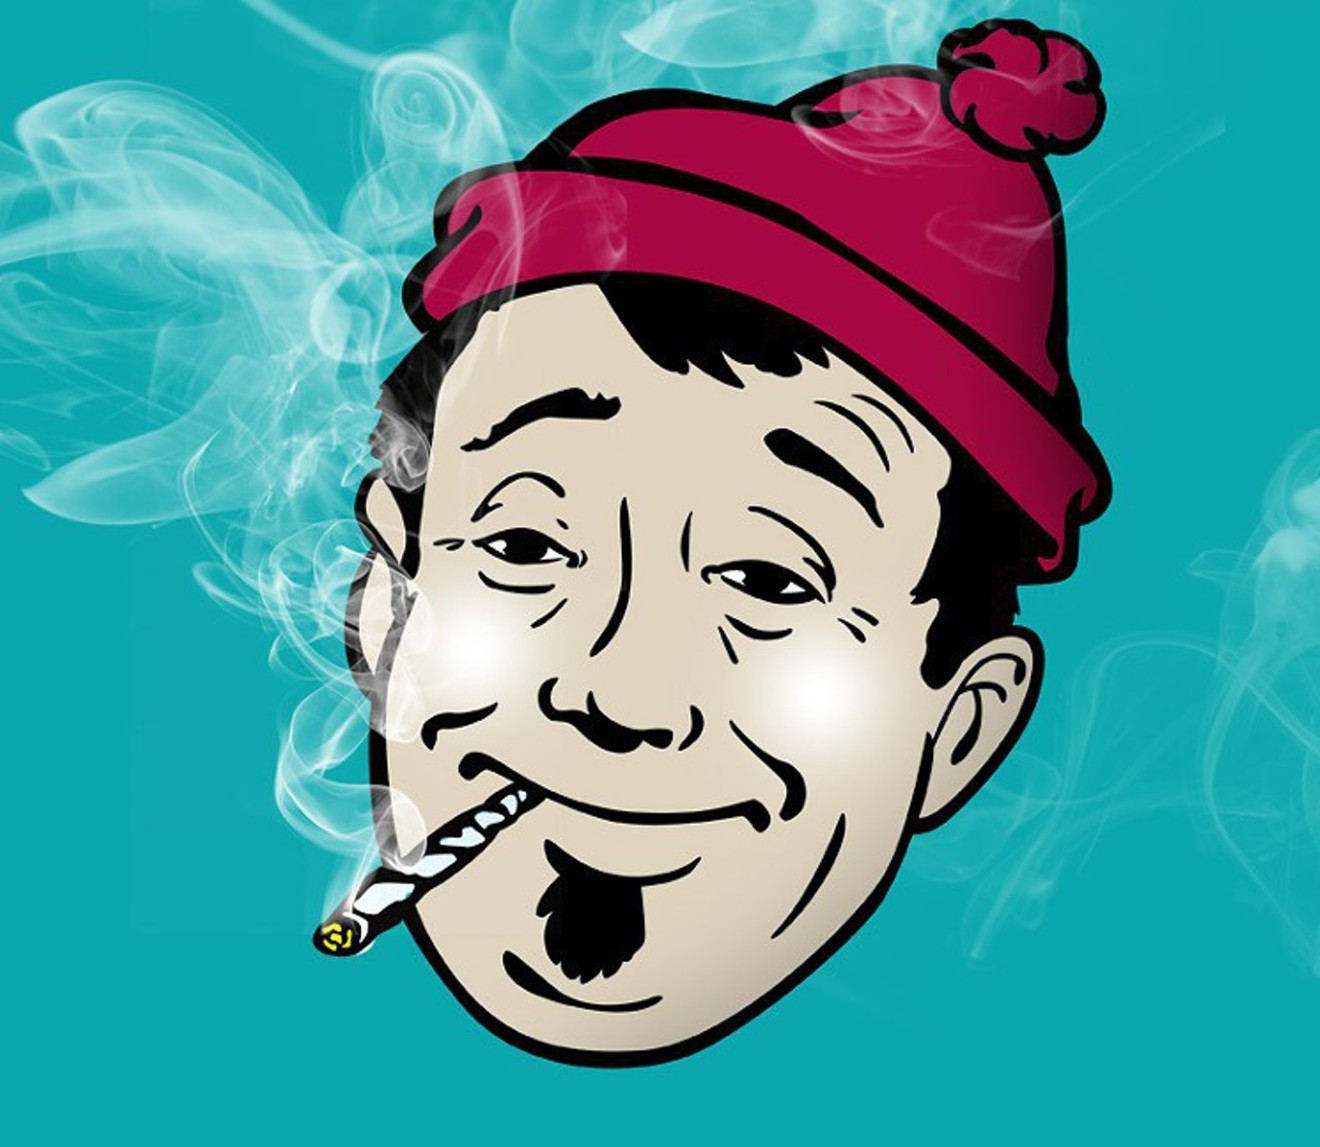 A cartoon pothead smoke weed